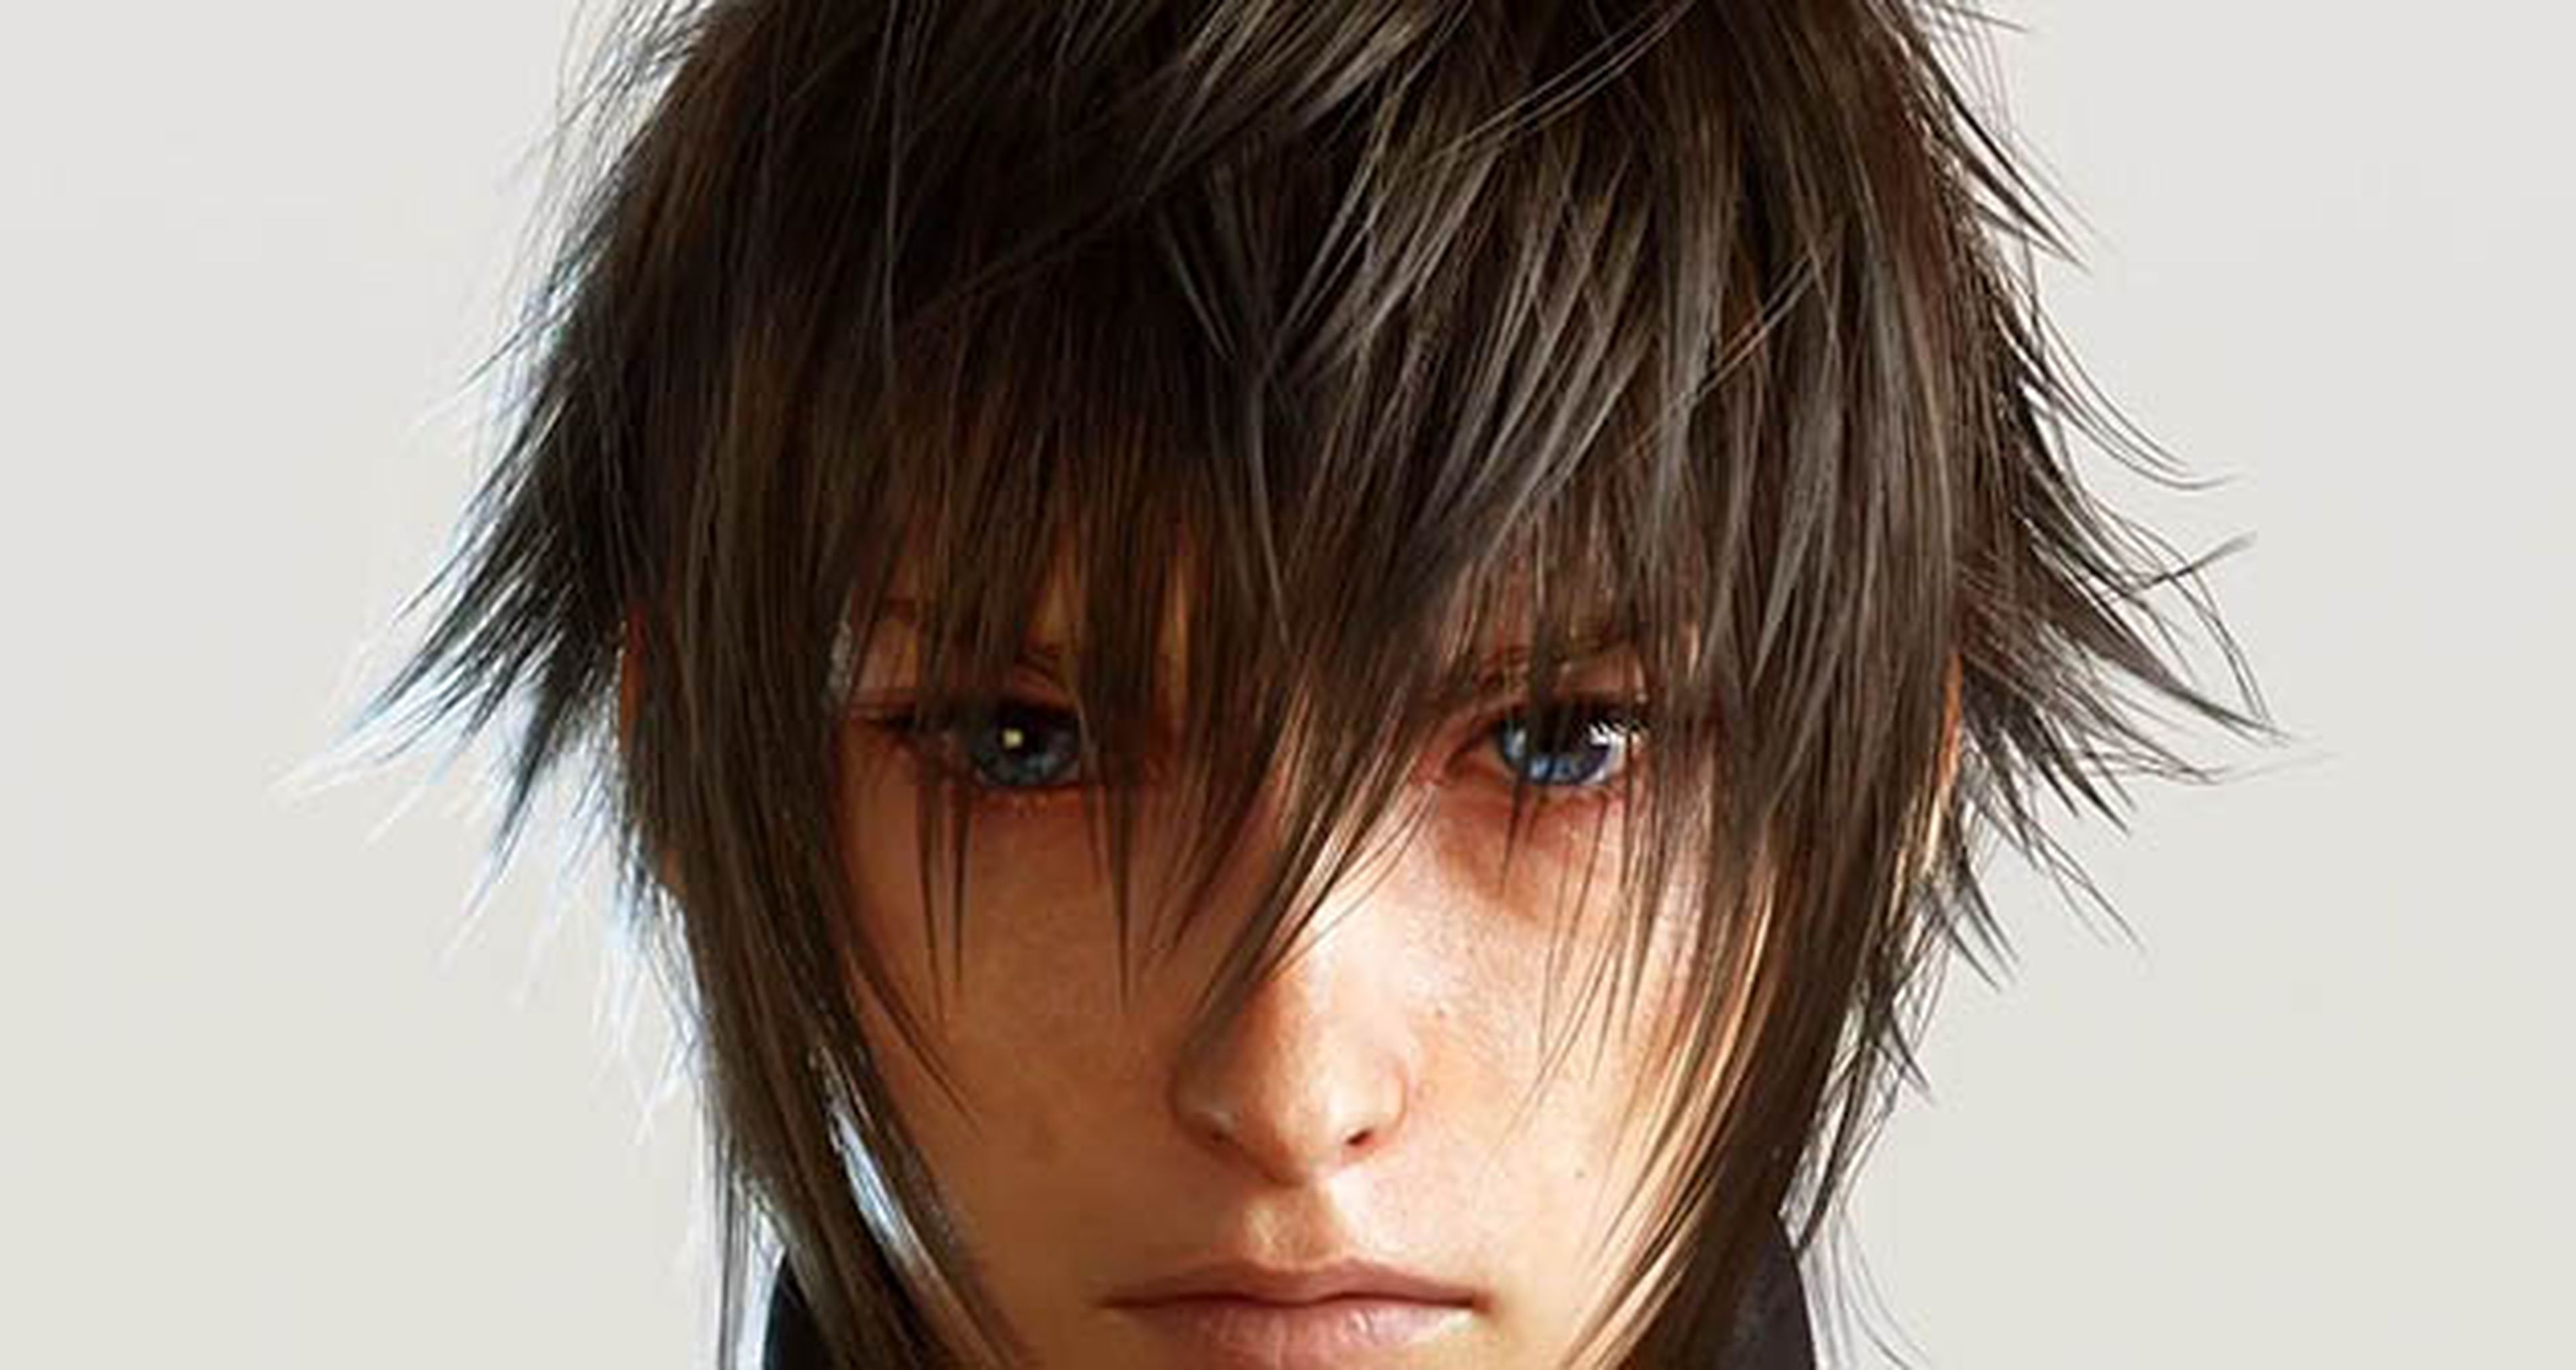 Final Fantasy XV - Incentivos de la reserva digital en PS4 y Xbox One